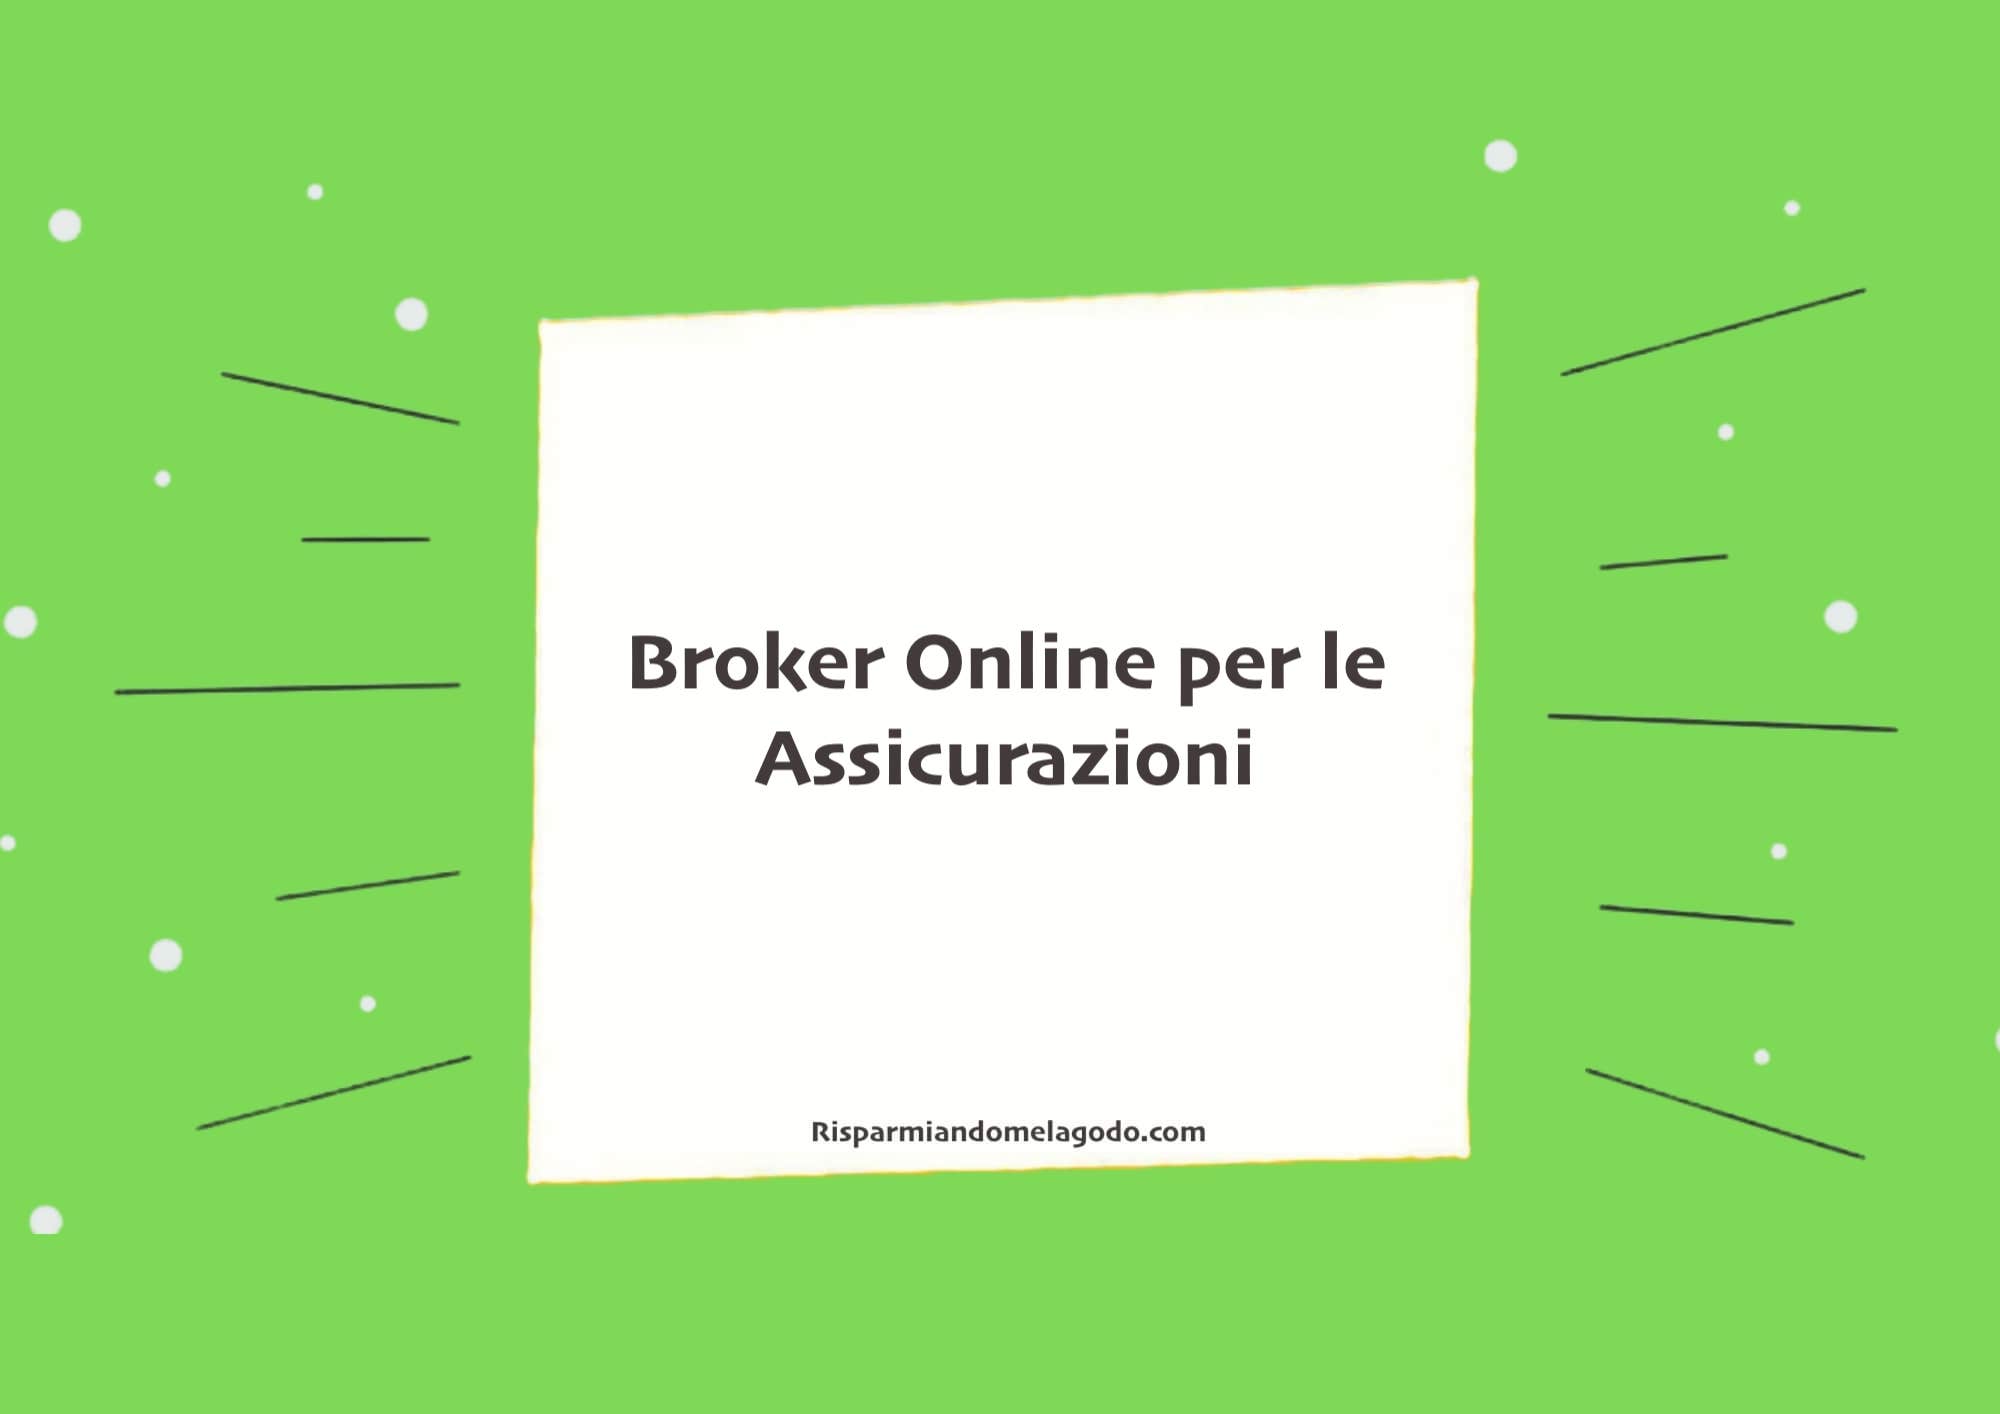 Broker Online per le Assicurazioni